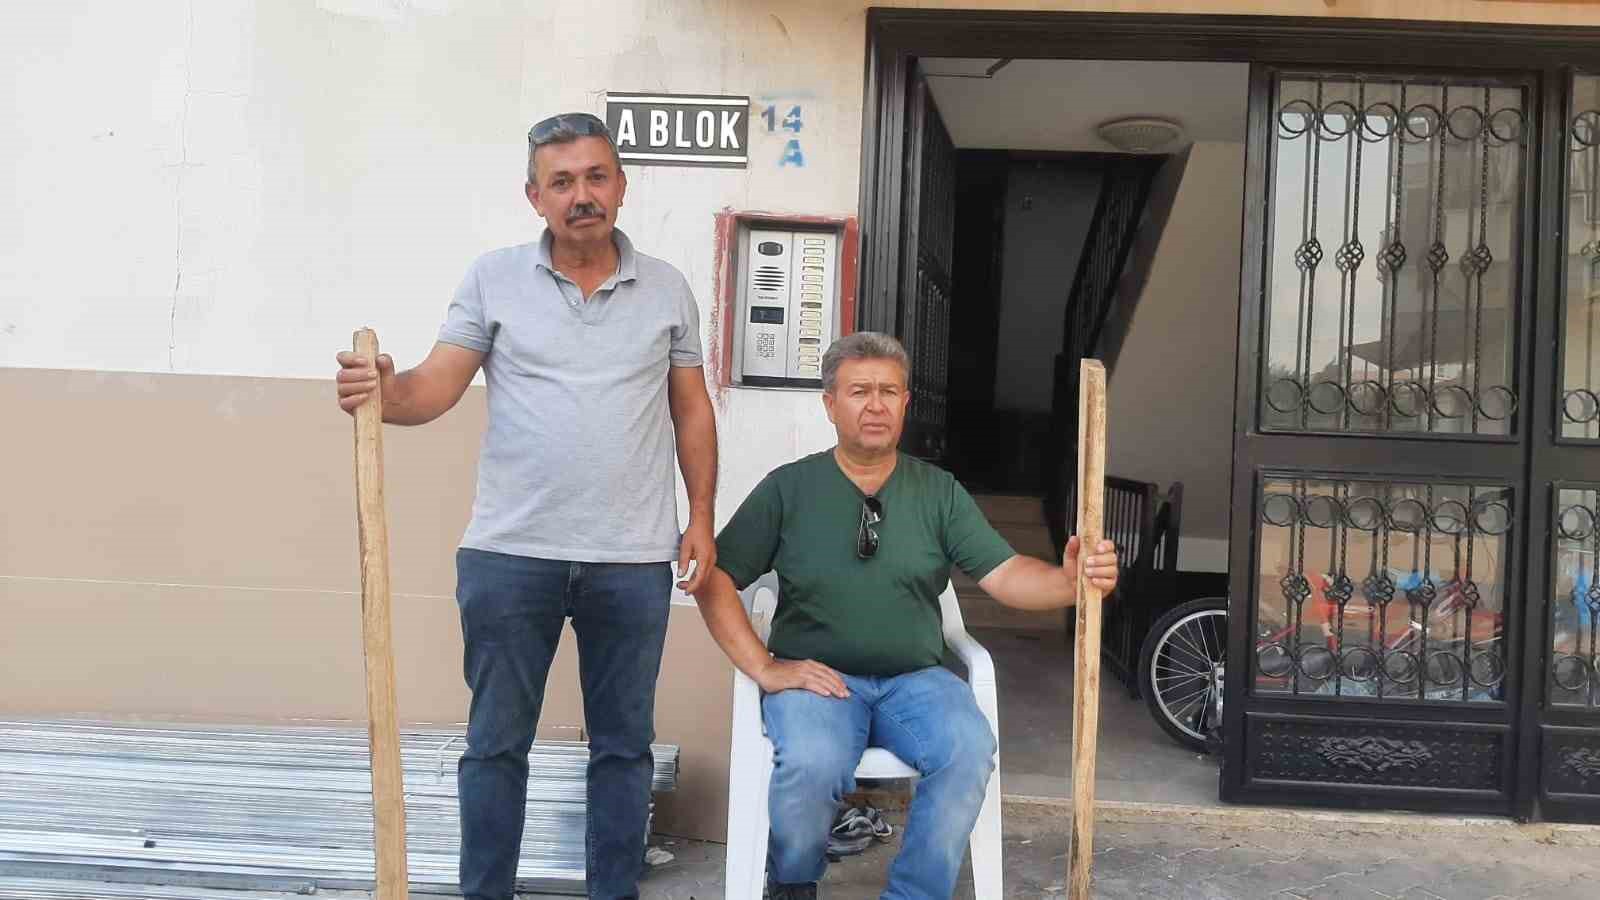 Adana'da apartman sakinleri sopayla nöbet tutmaya başladı